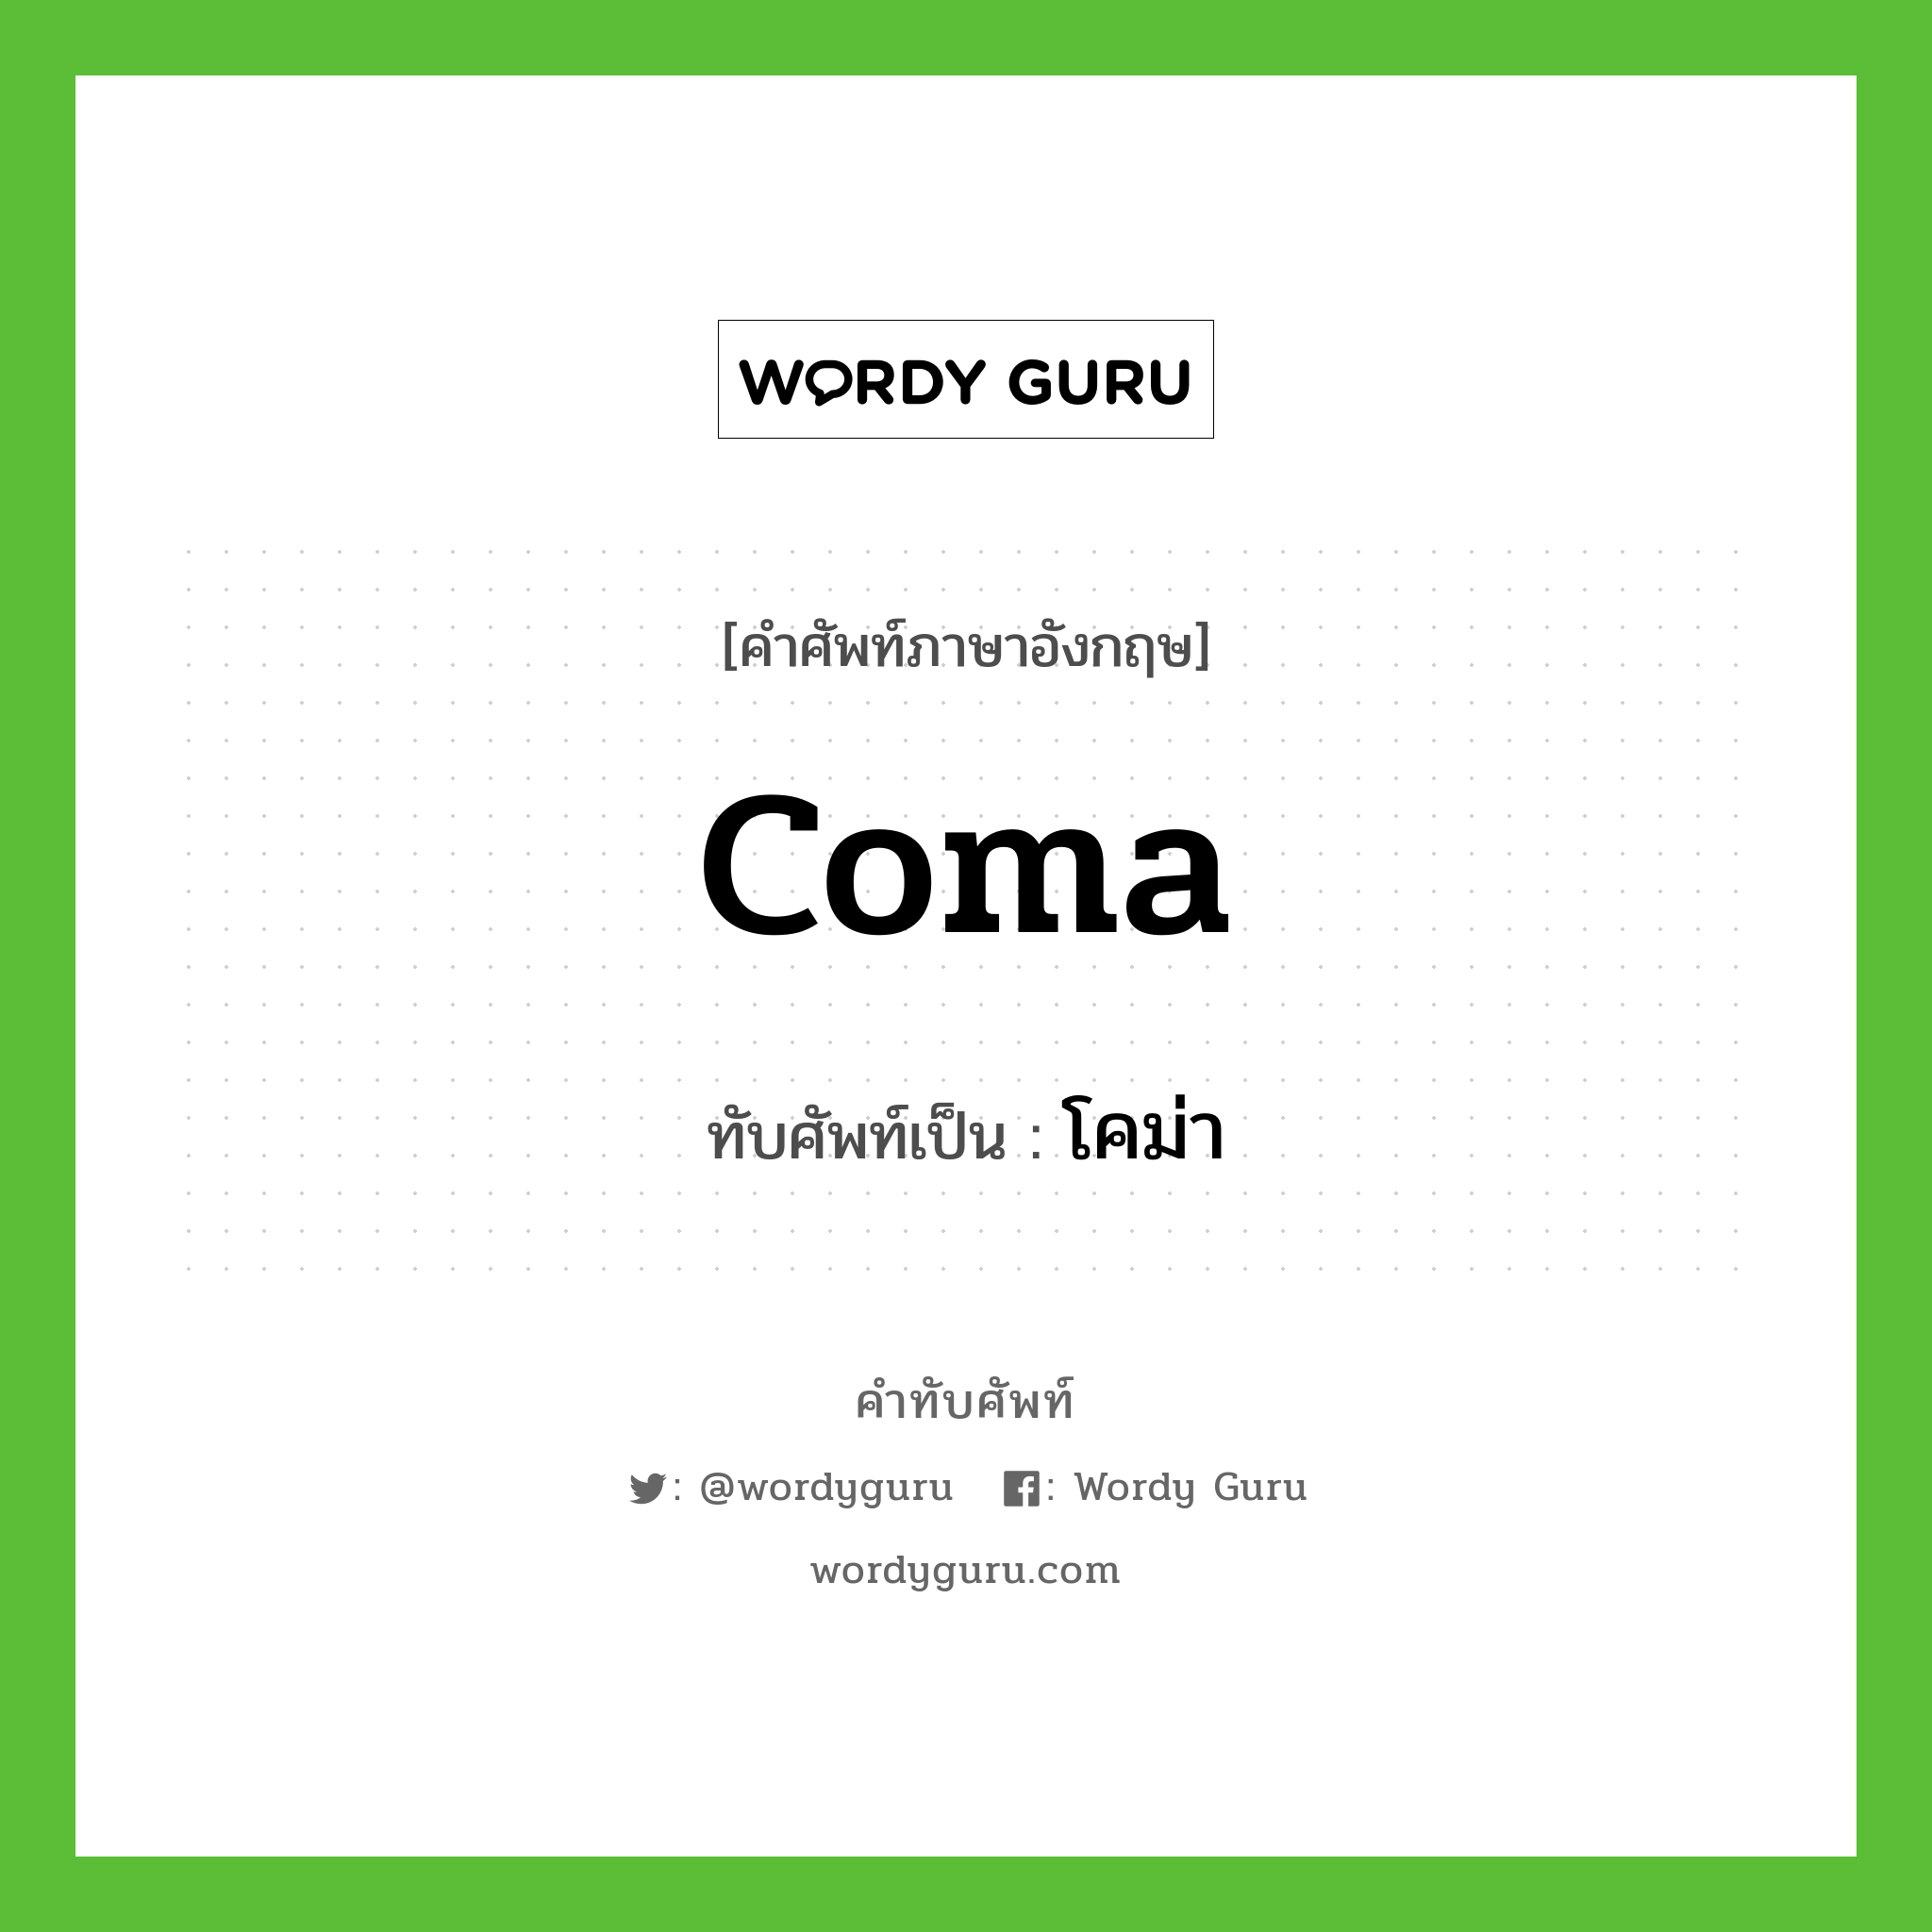 coma เขียนเป็นคำไทยว่าอะไร?, คำศัพท์ภาษาอังกฤษ coma ทับศัพท์เป็น โคม่า